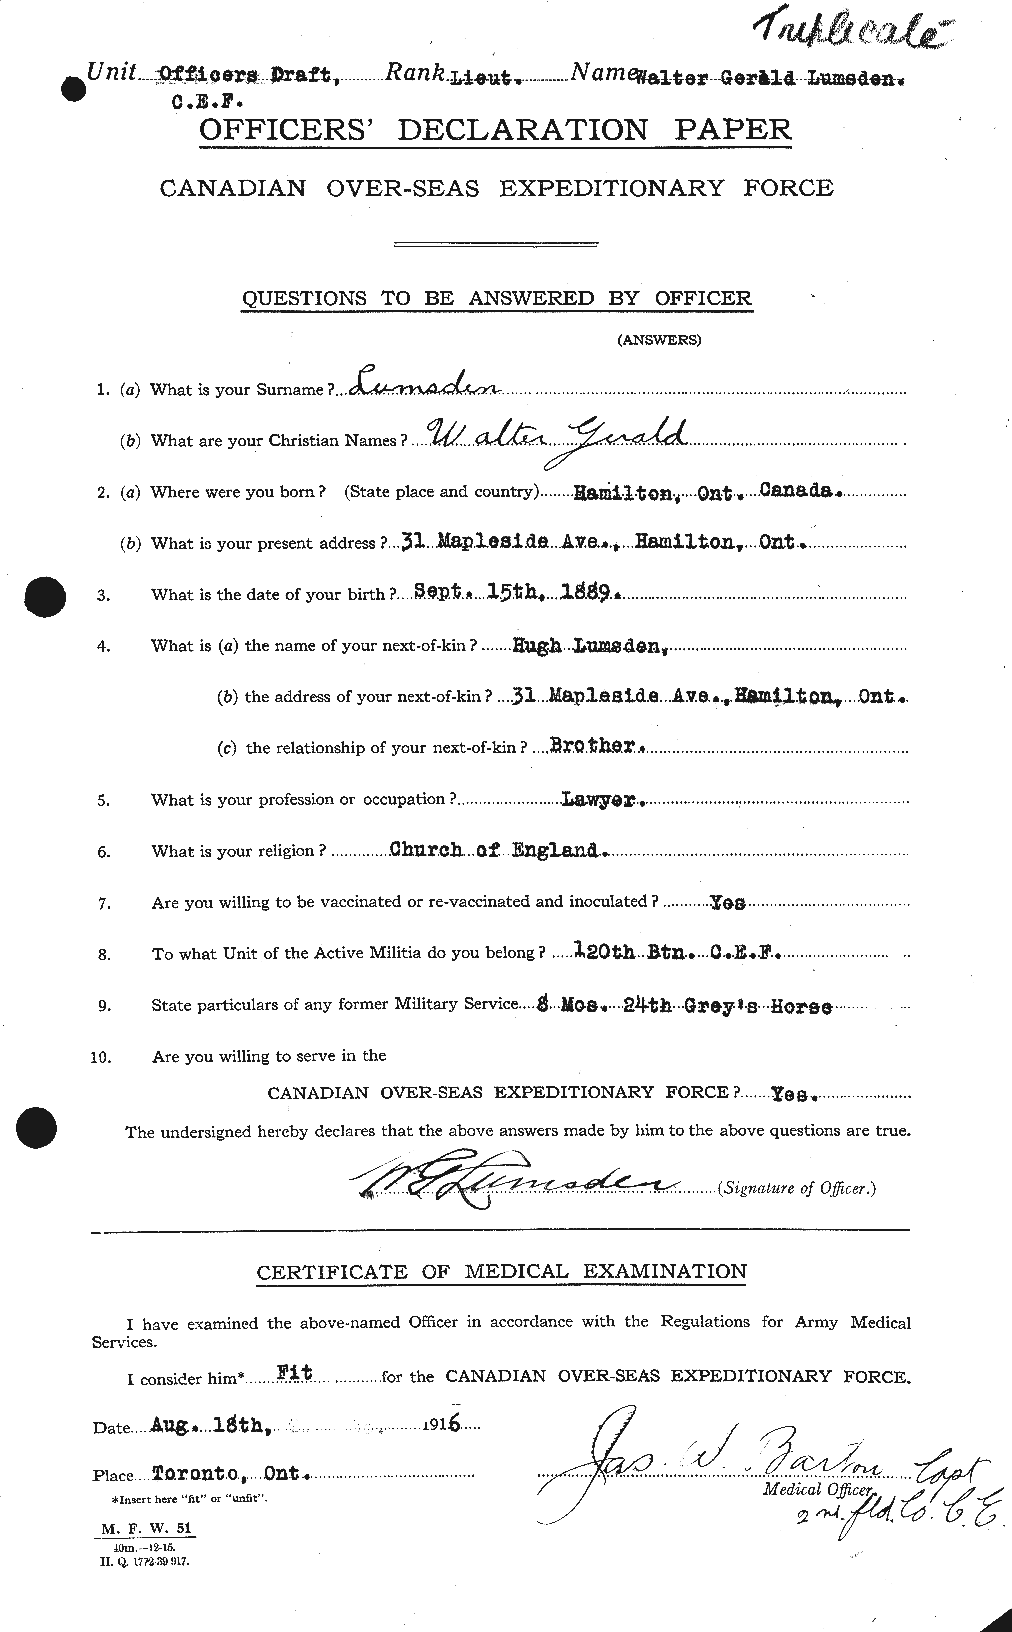 Dossiers du Personnel de la Première Guerre mondiale - CEC 473155a